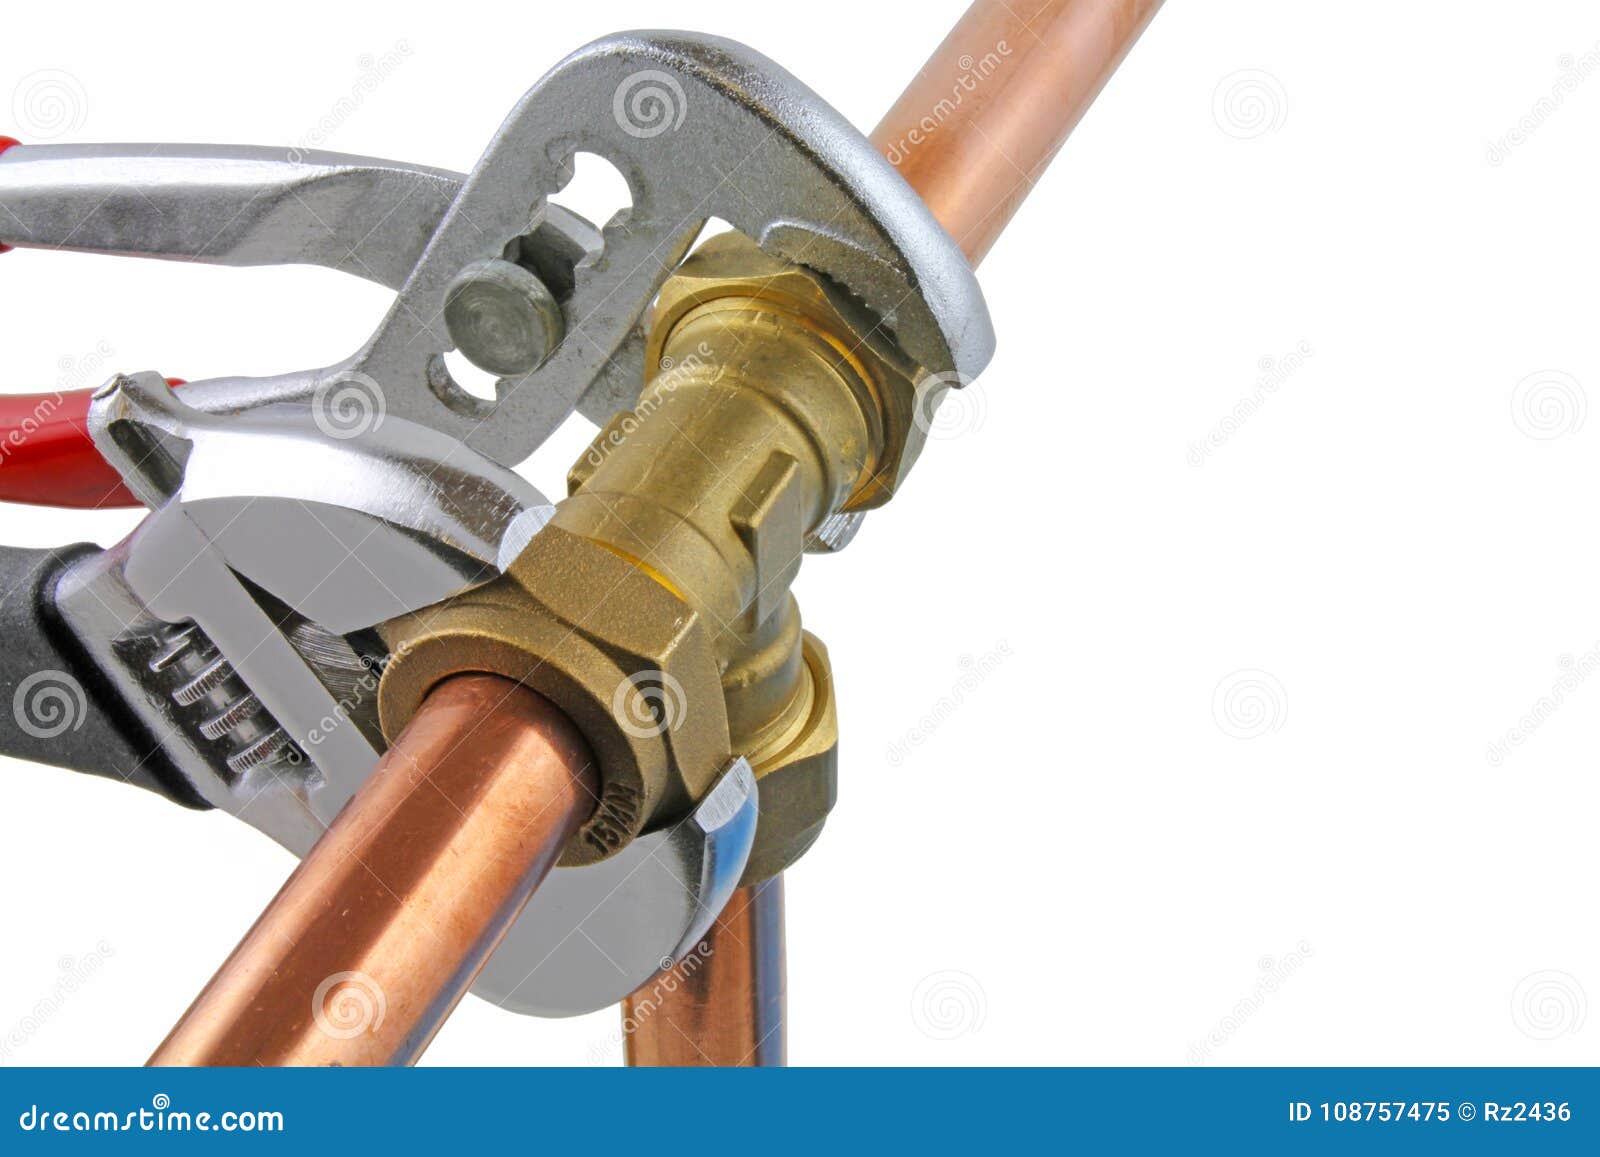 plumber tightening up pipework